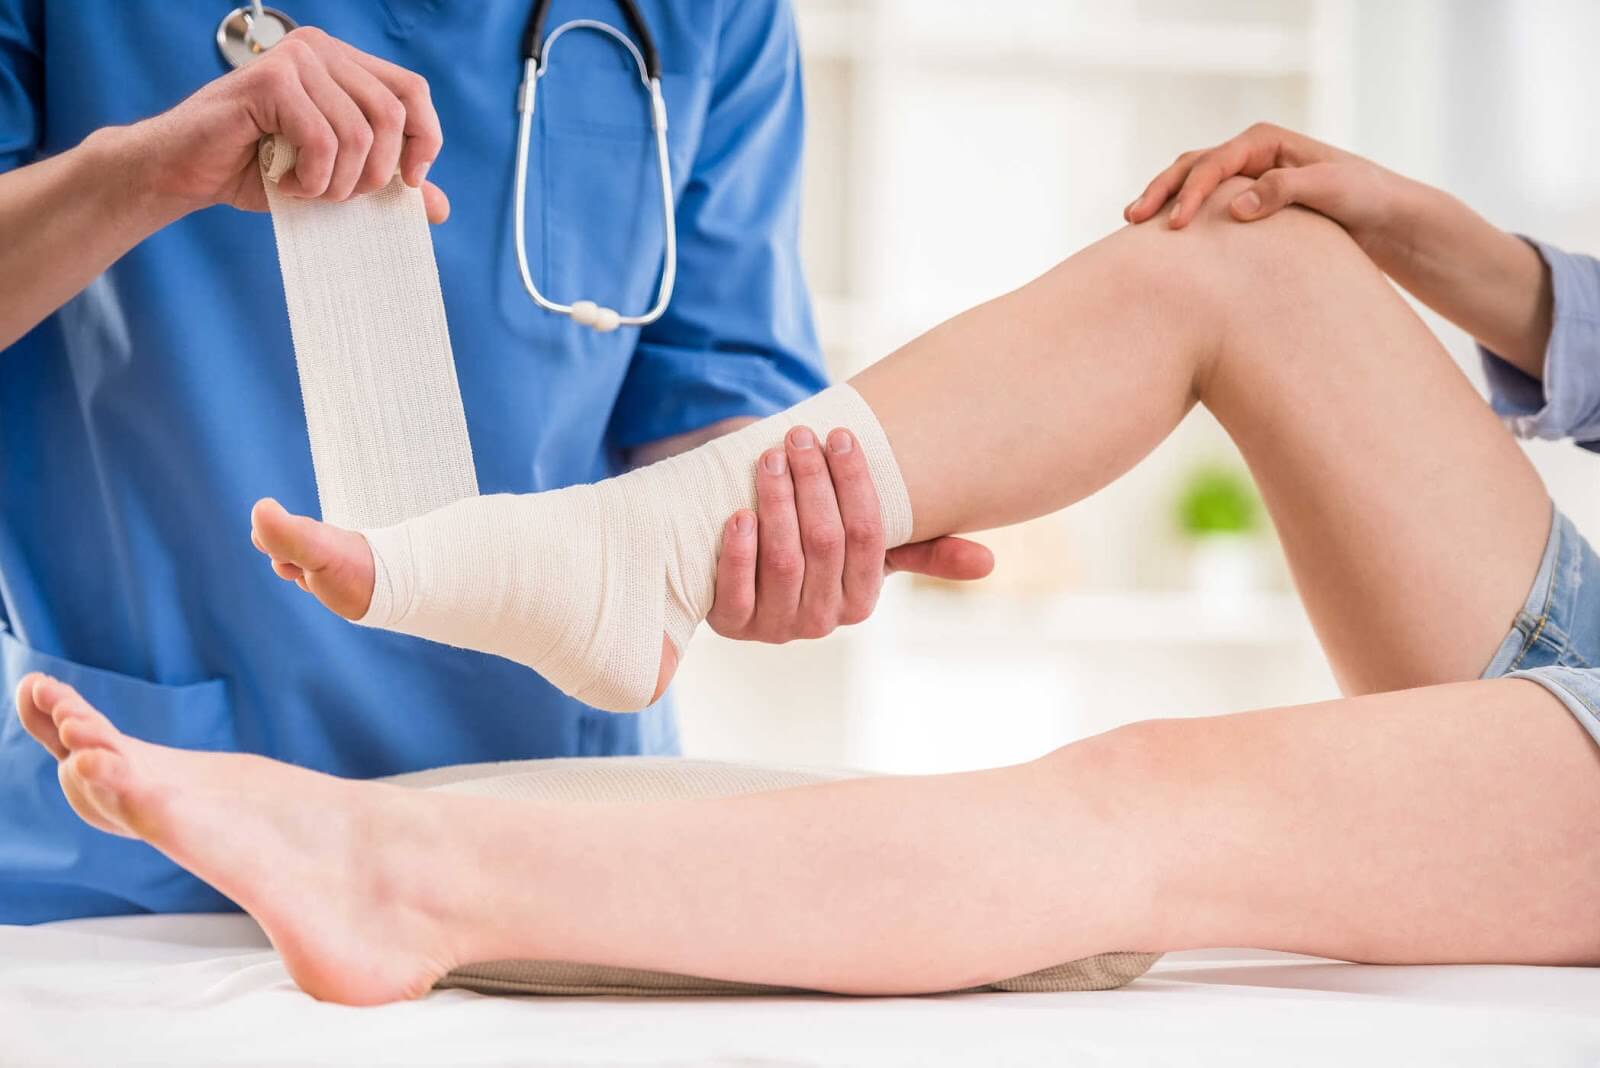  Khám chân tại các cơ sở y tế để có biện pháp khắc phục hiệu quả nhất